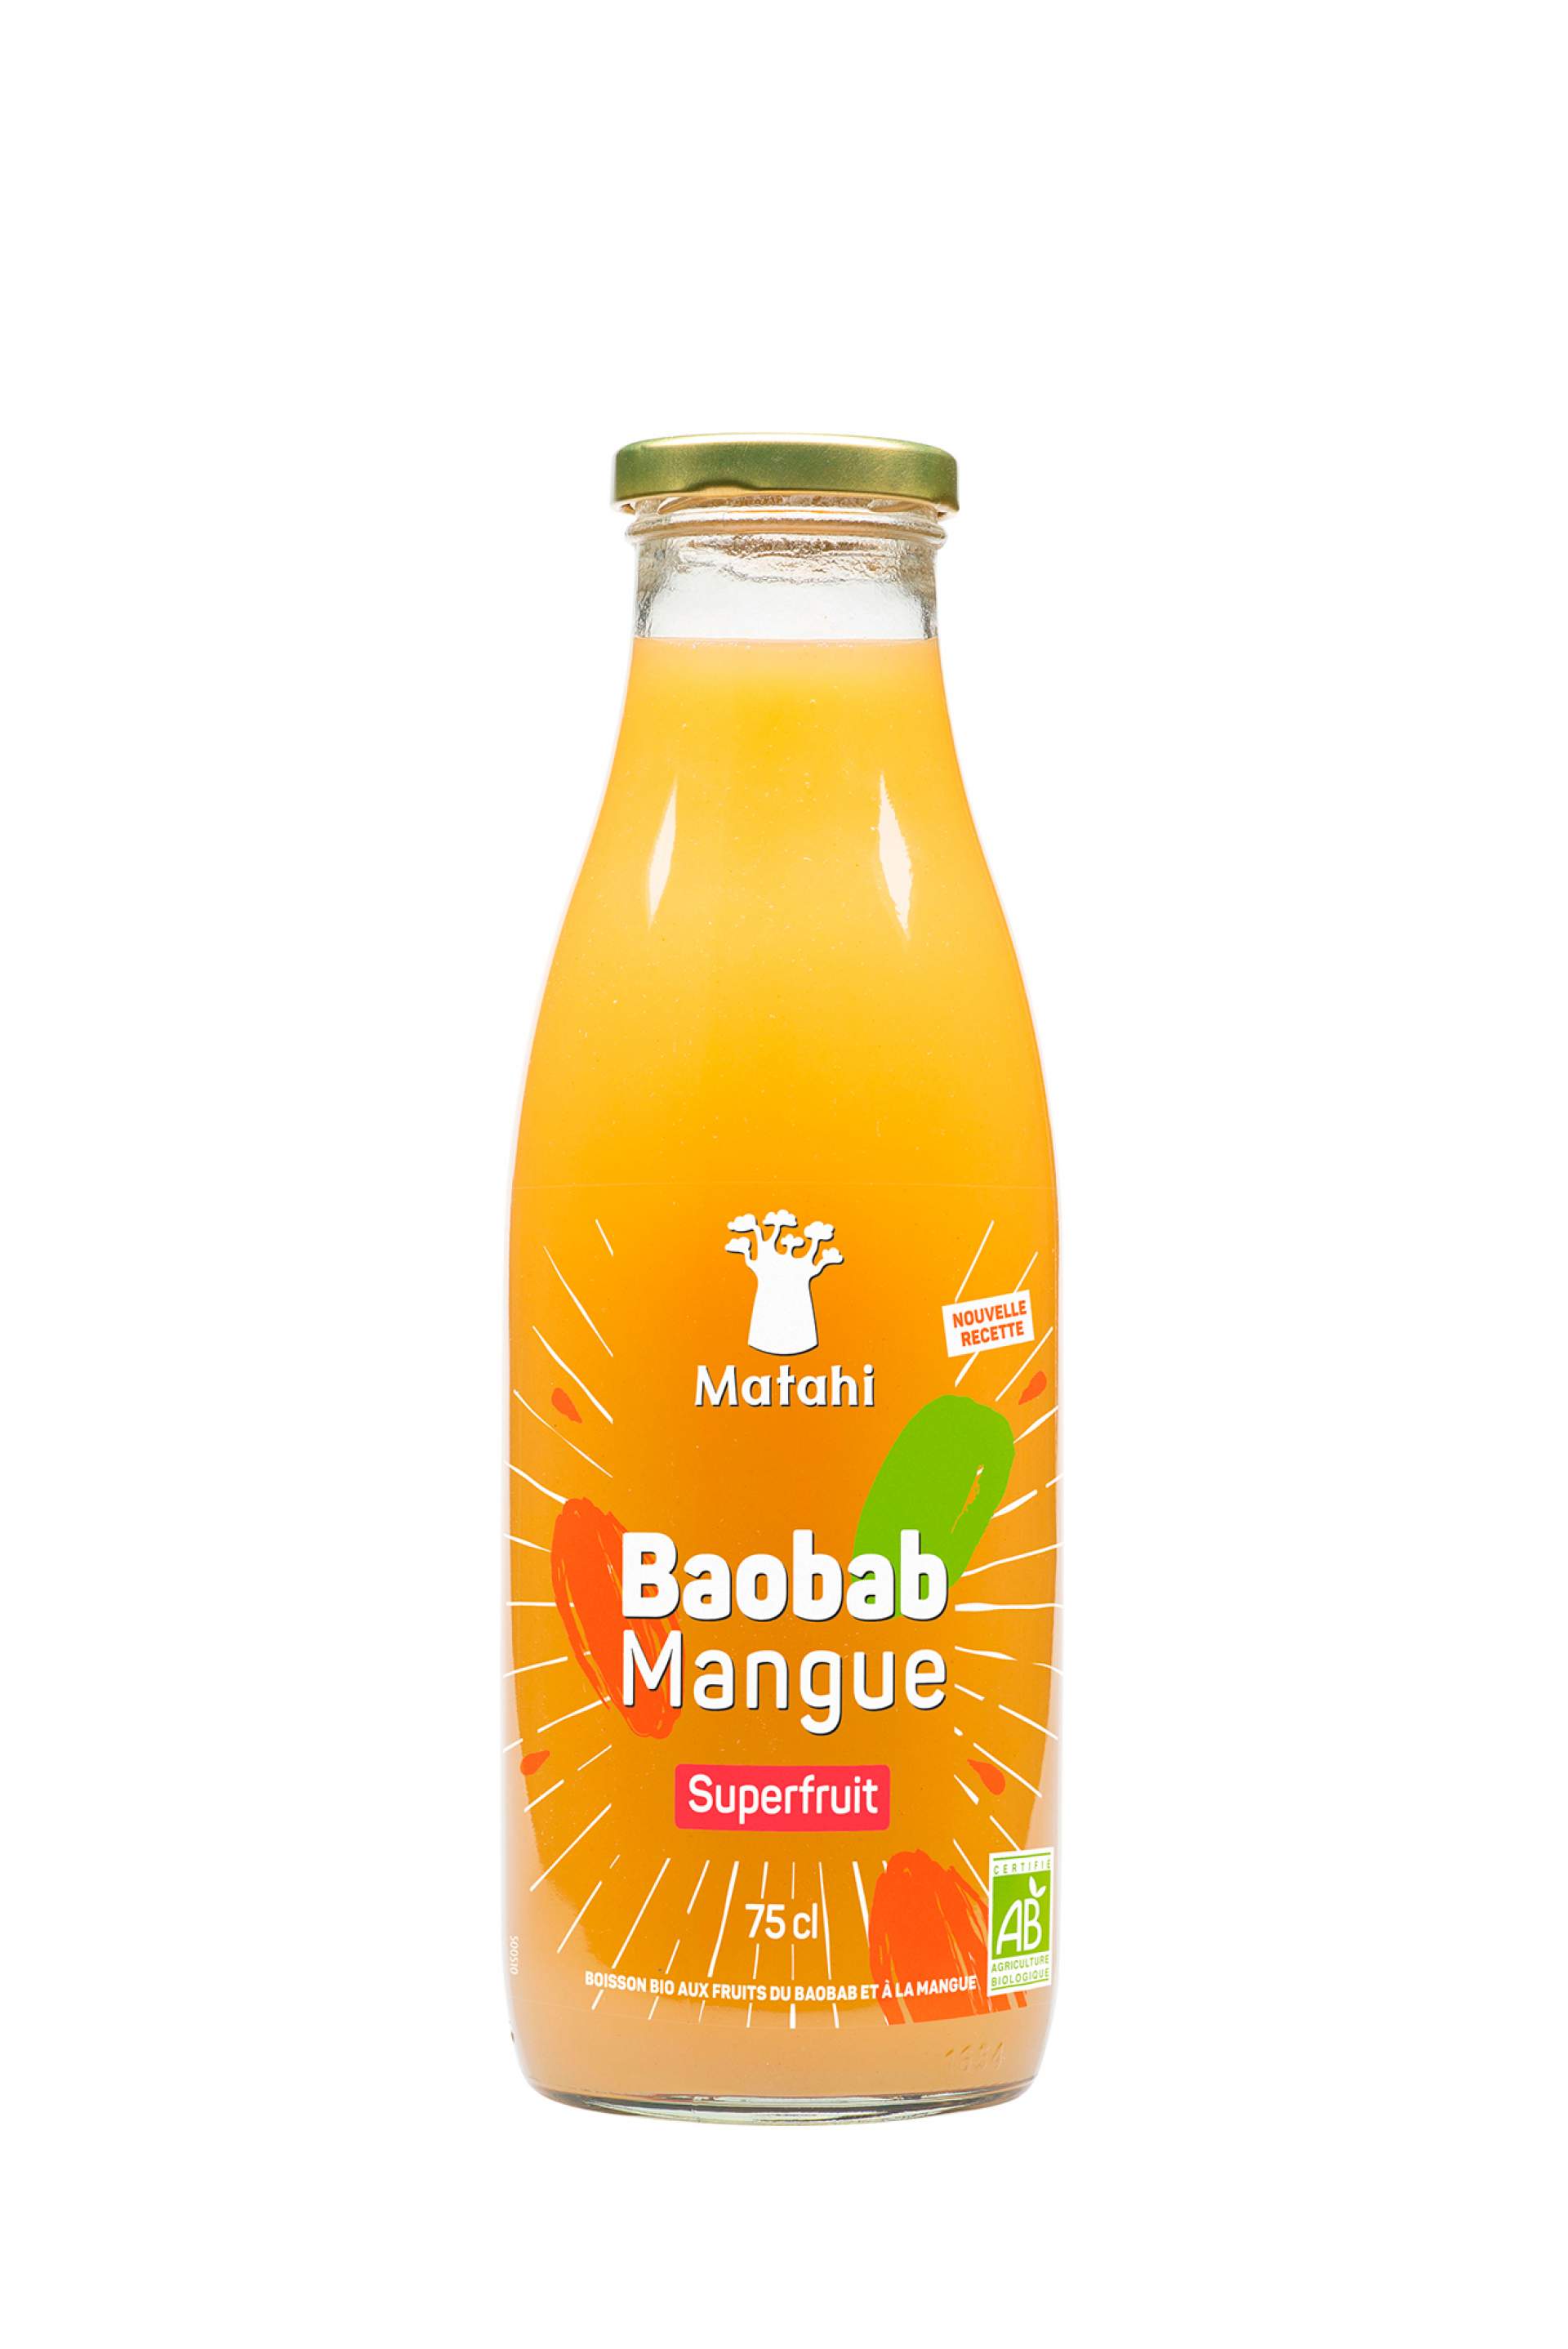 Création du packaging de la boisson mangue